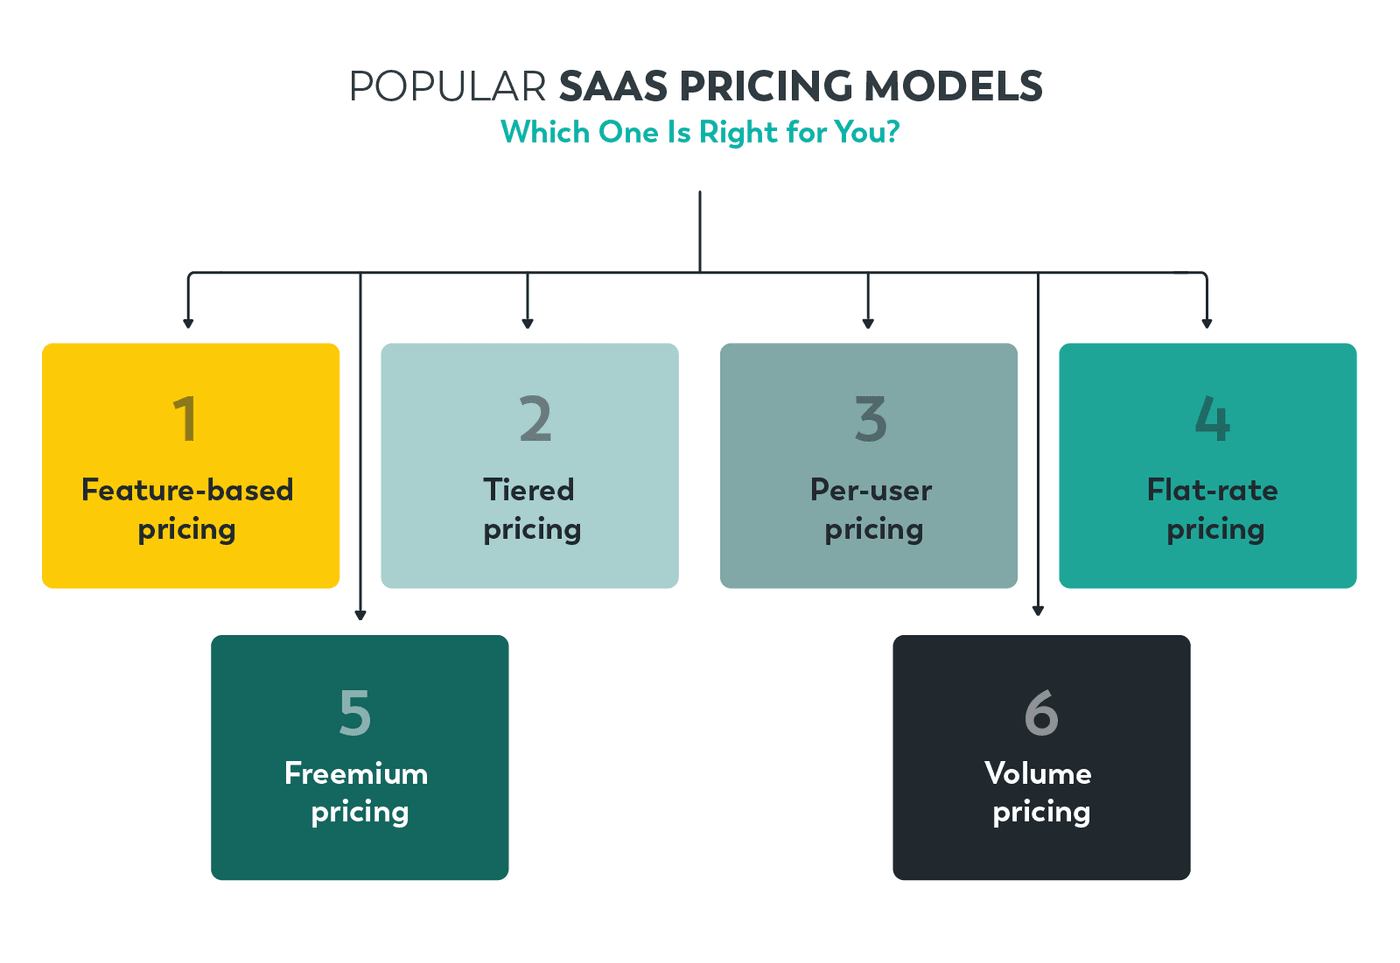 Popular SaaS pricing models